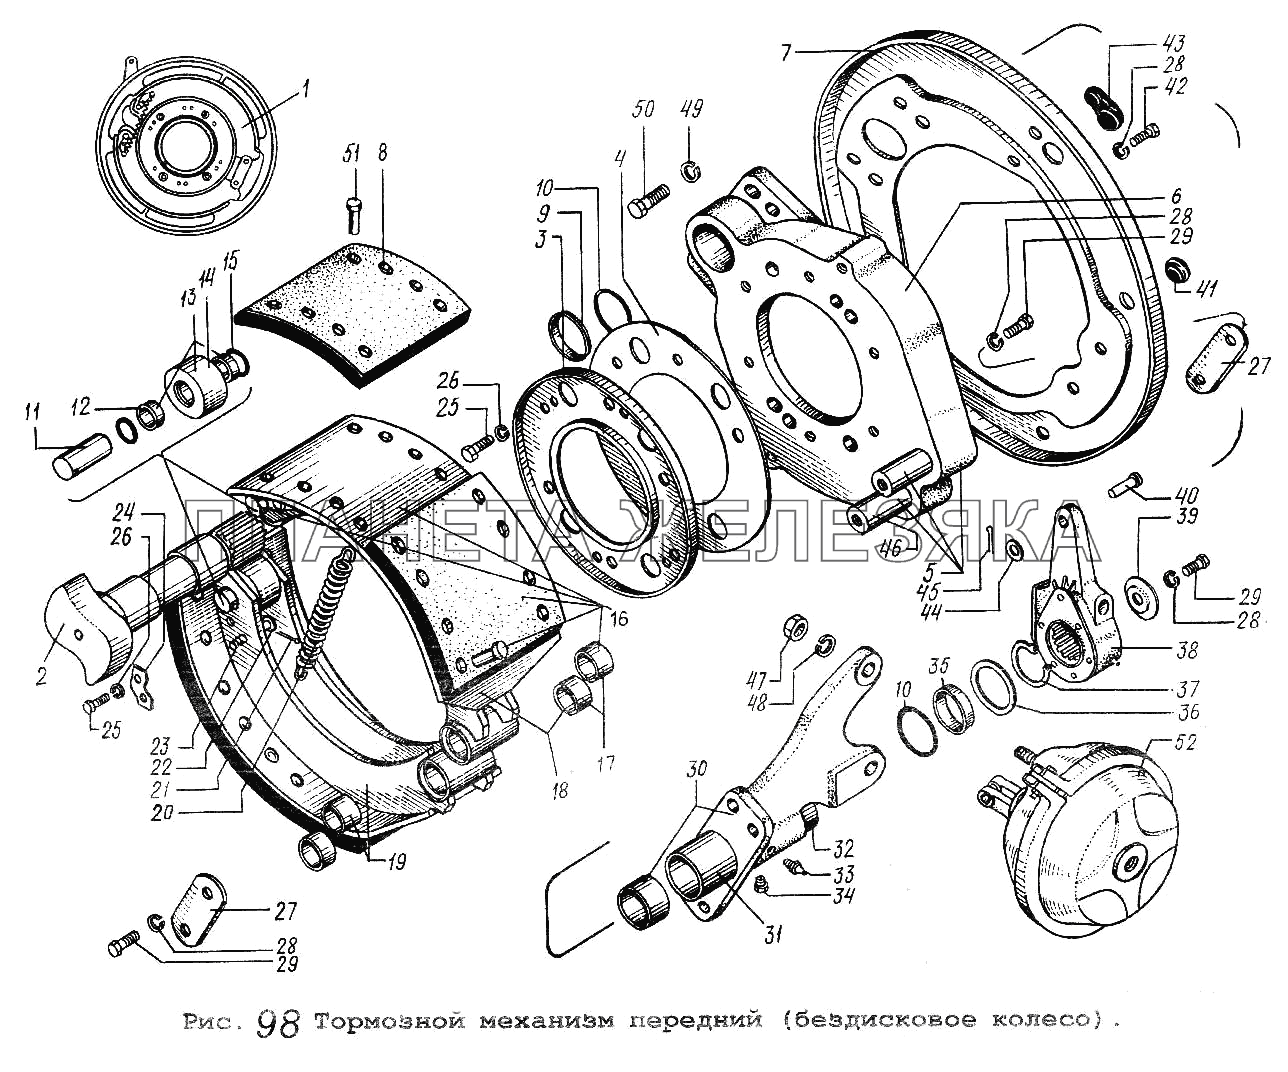 Тормозной механизм передний (бездисковое колесо) МАЗ-5516